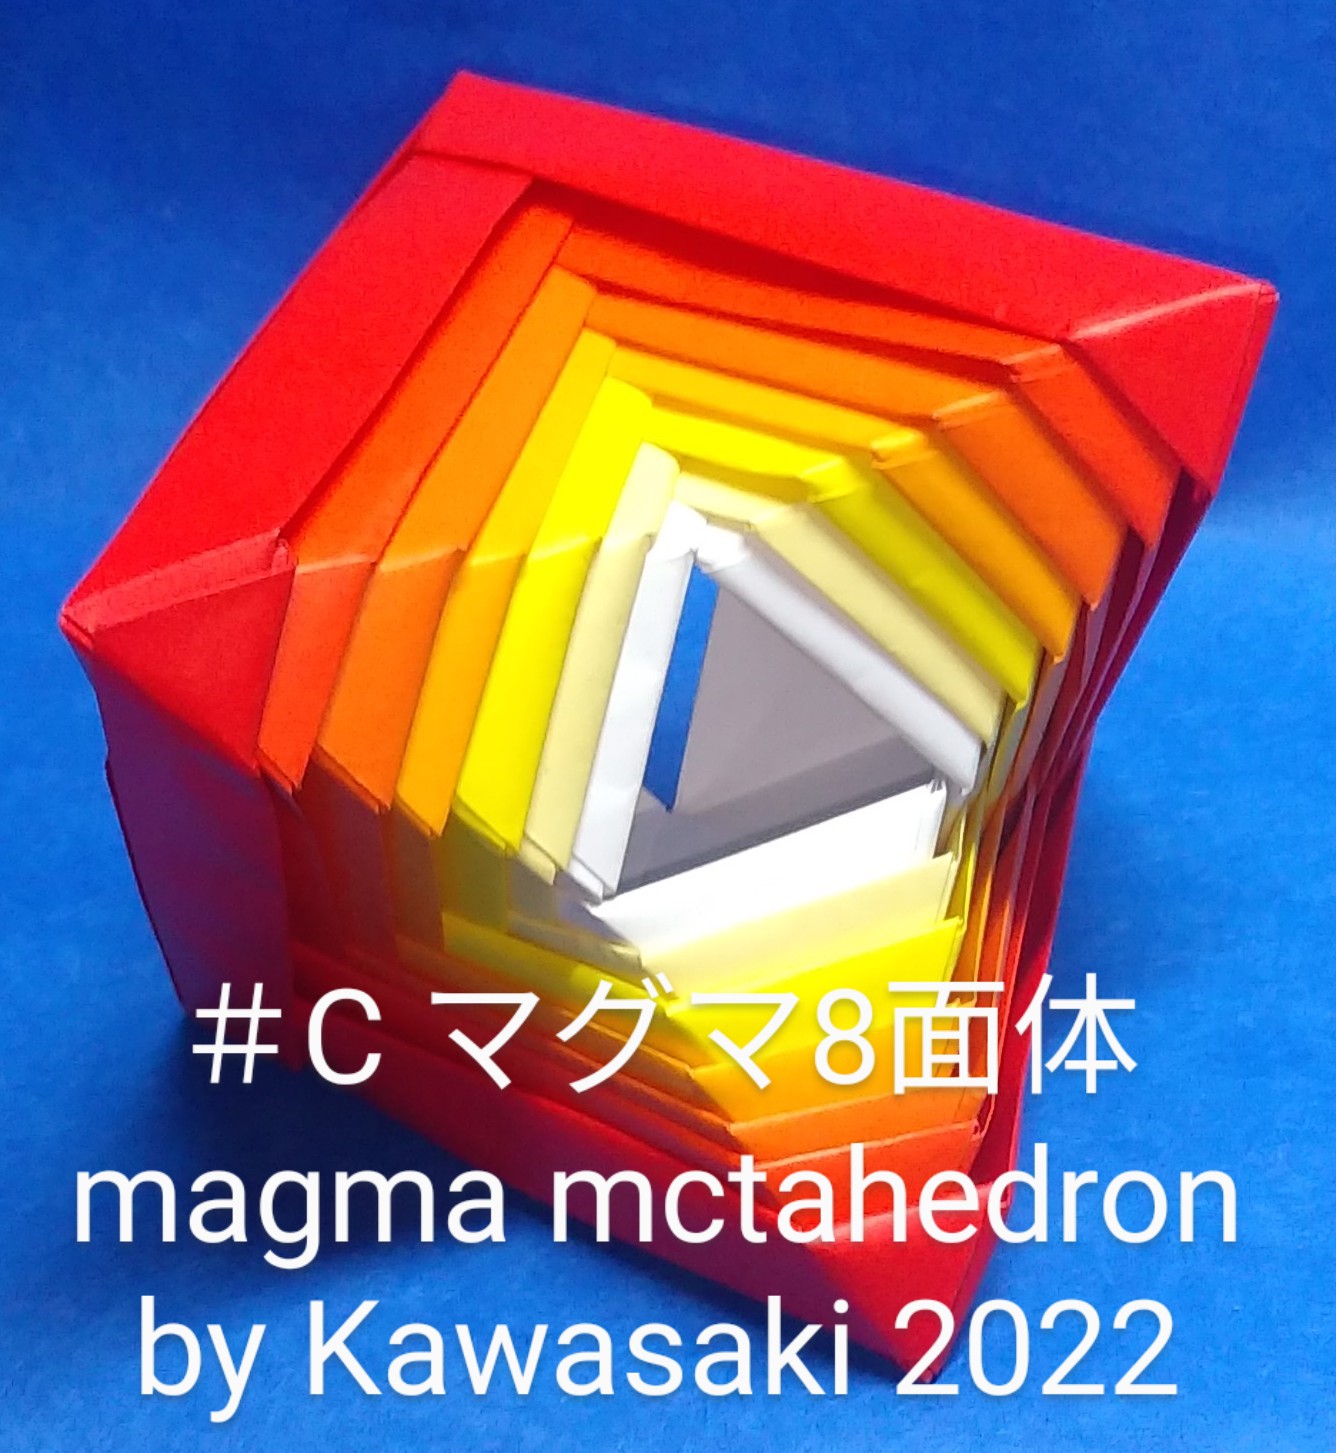 2023/03/03(Fri) 15:02「＃C マグマ8面体 magma mctahedron by Kawasaki 2022 (作2022年12月10日18時58分)」川崎敏和 T.Kawasaki 
（創作者 Author：川崎敏和 T.Kawasaki ,　製作者 Folder：川崎敏和 T.Kawasaki ,　出典 Source：2022年川崎敏和折り紙キット＃C）
 長方形で折ったパーツ6枚を組んだ穴あき8面体【8面体ユニット】を用紙幅を変えて作って重ねることで十二単のような美しさが生まれました。2022年マイベスト第3位です。